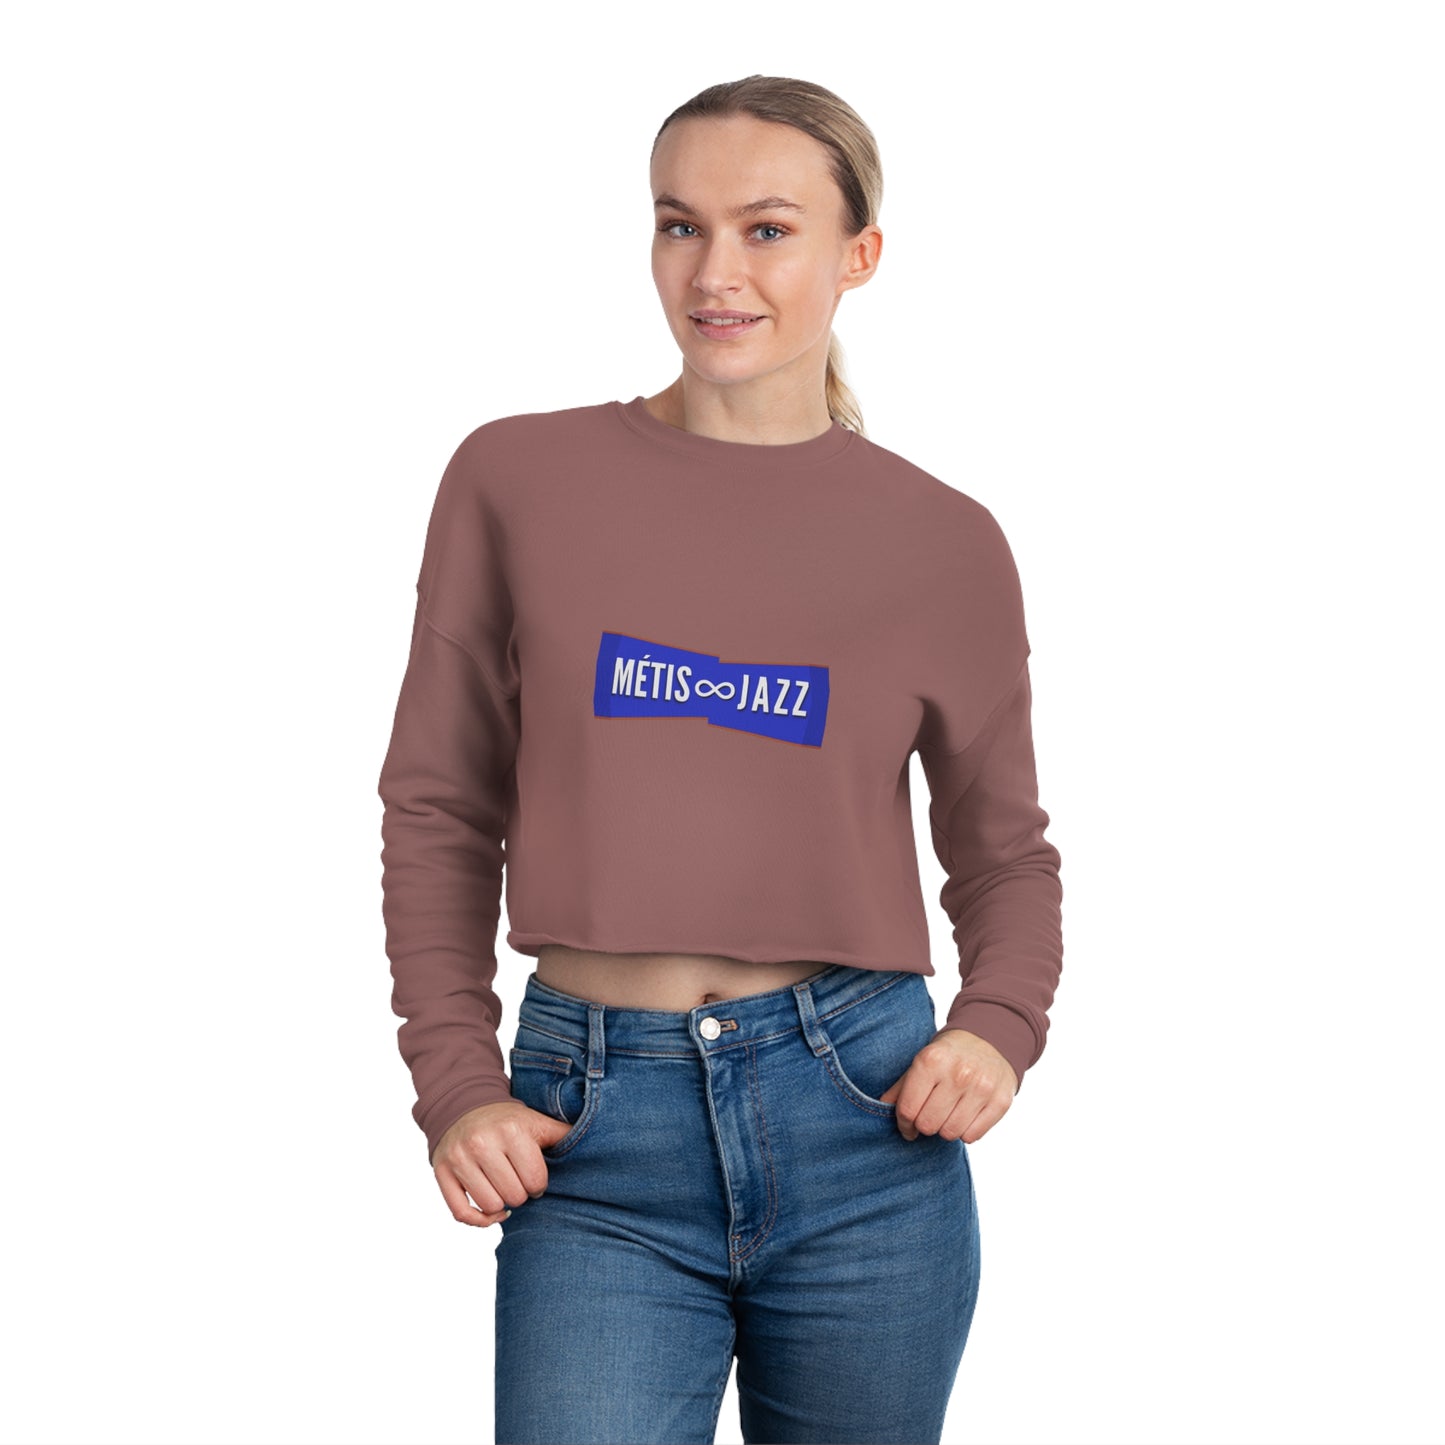 Métis ∞ Jazz Women's Cropped Shirt